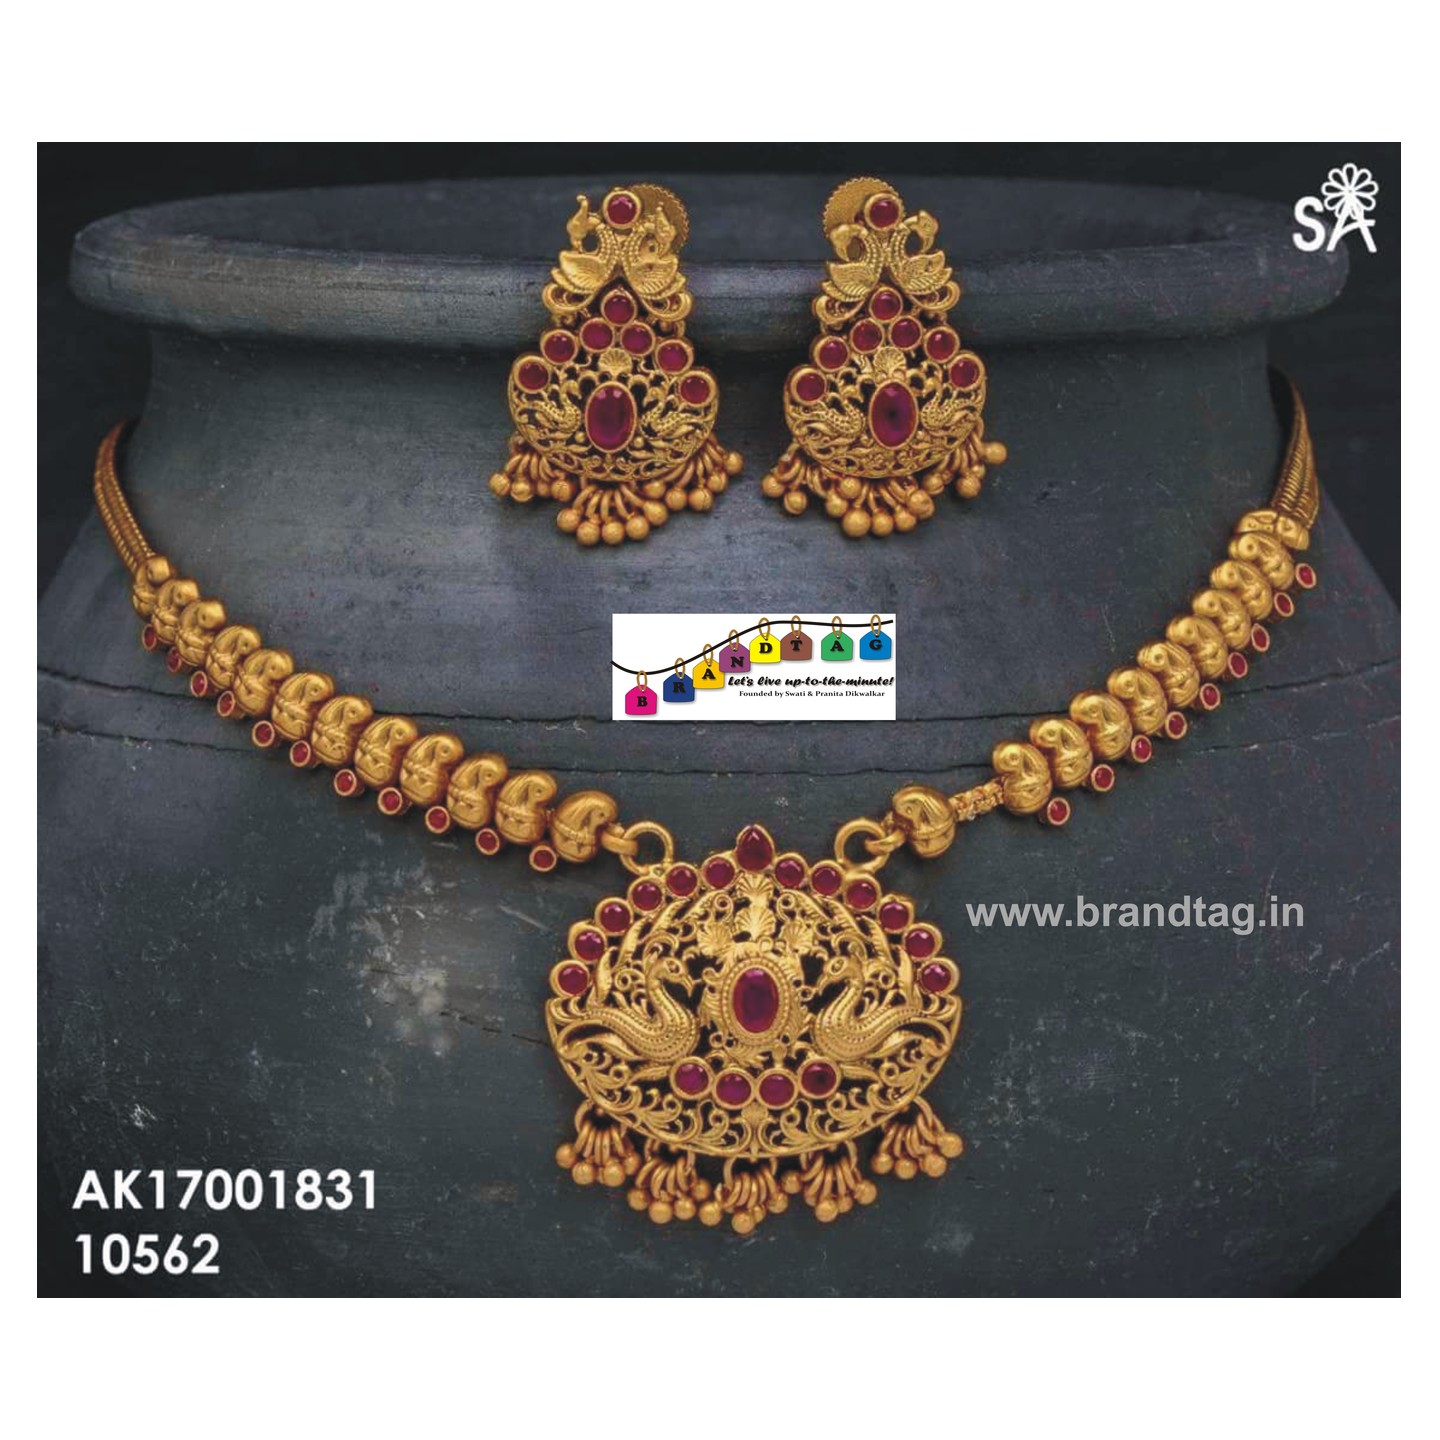 Royal Golden Necklace set!